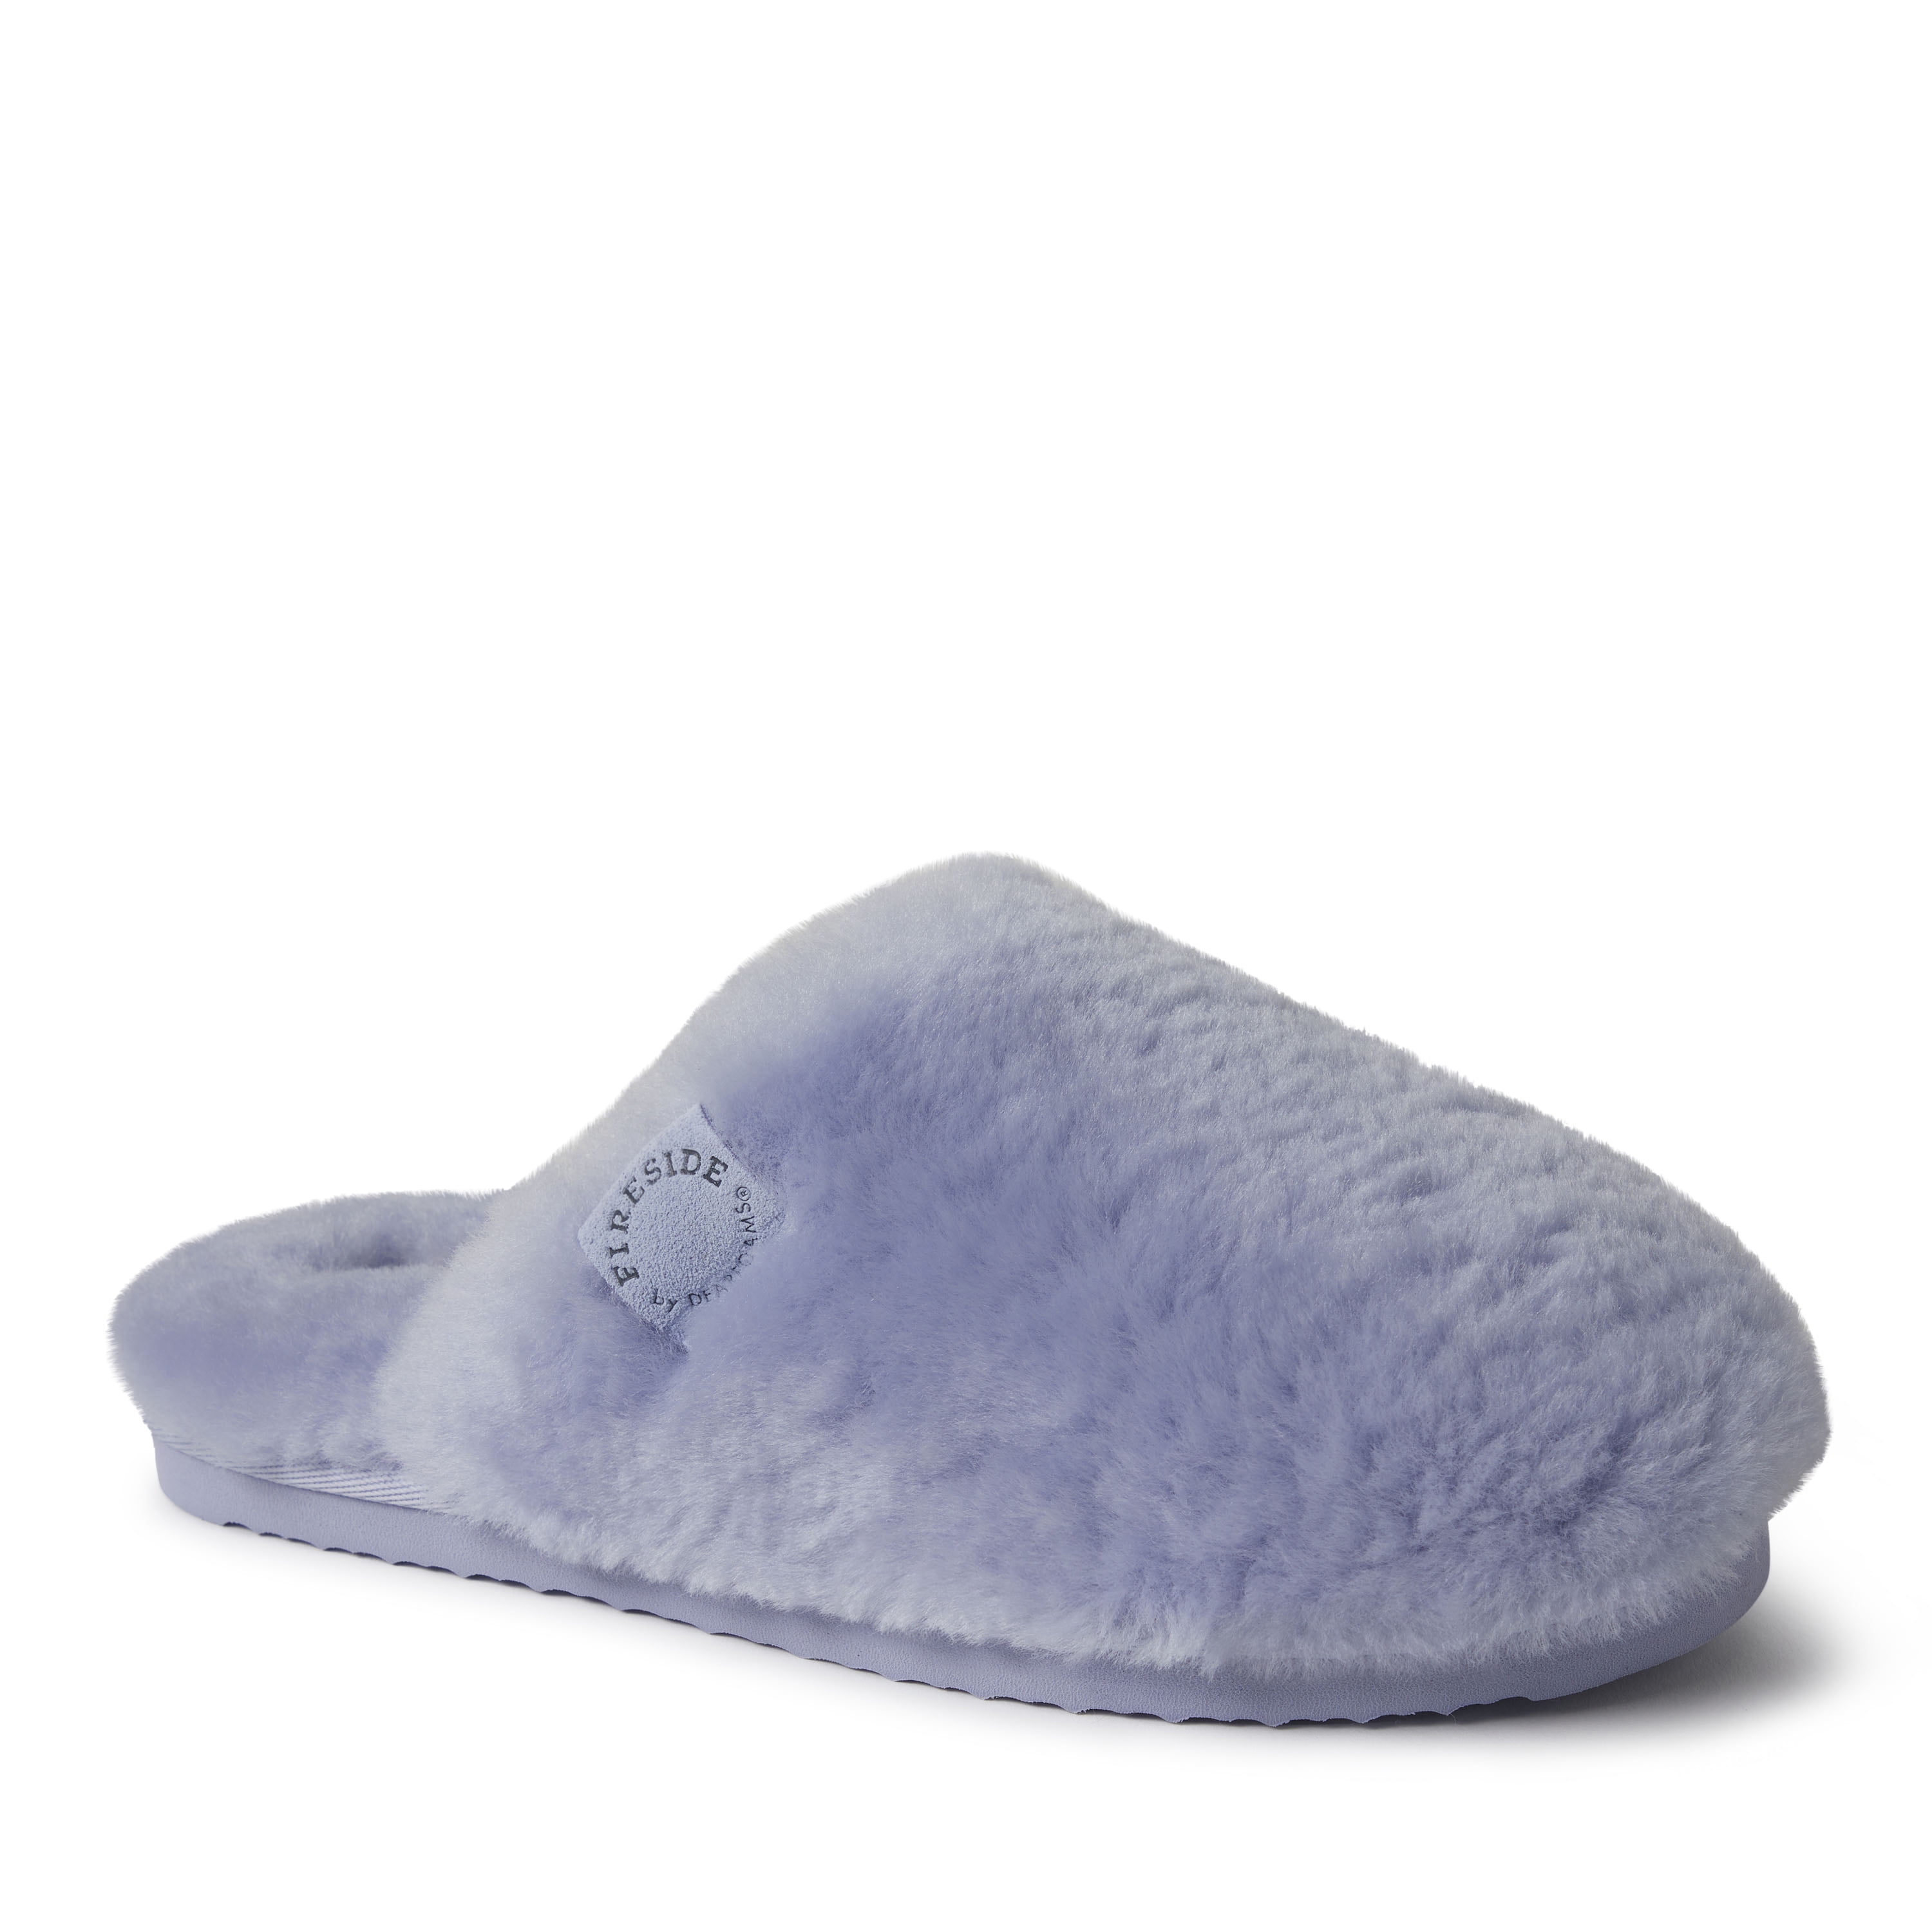 Details more than 289 dearfoam slippers walmart super hot